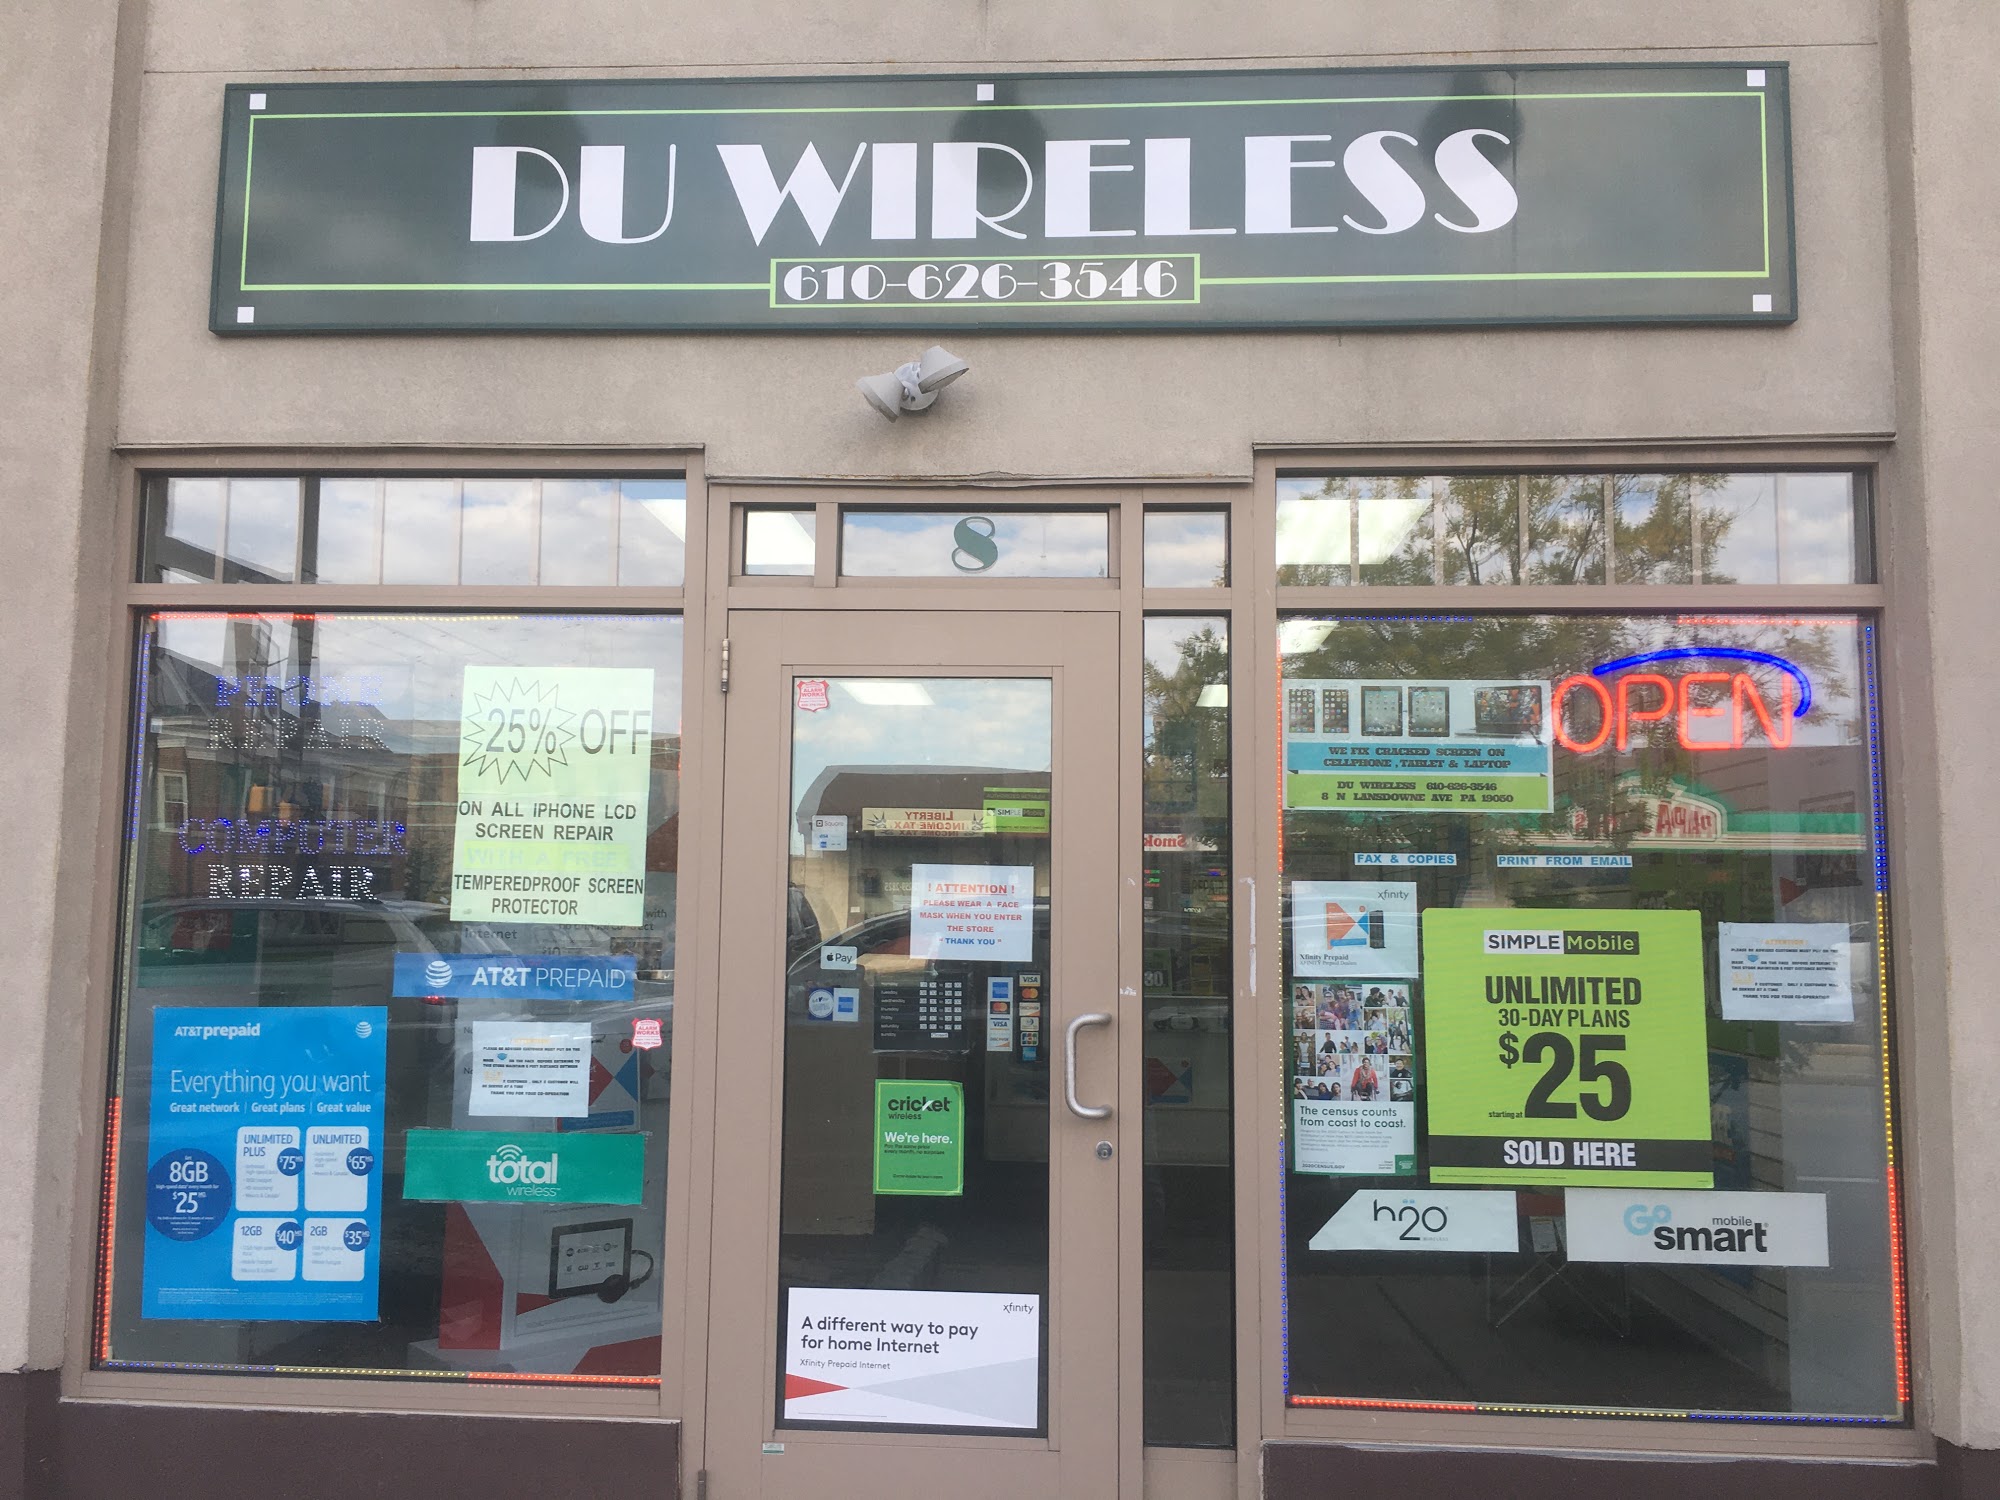 DU Wireless